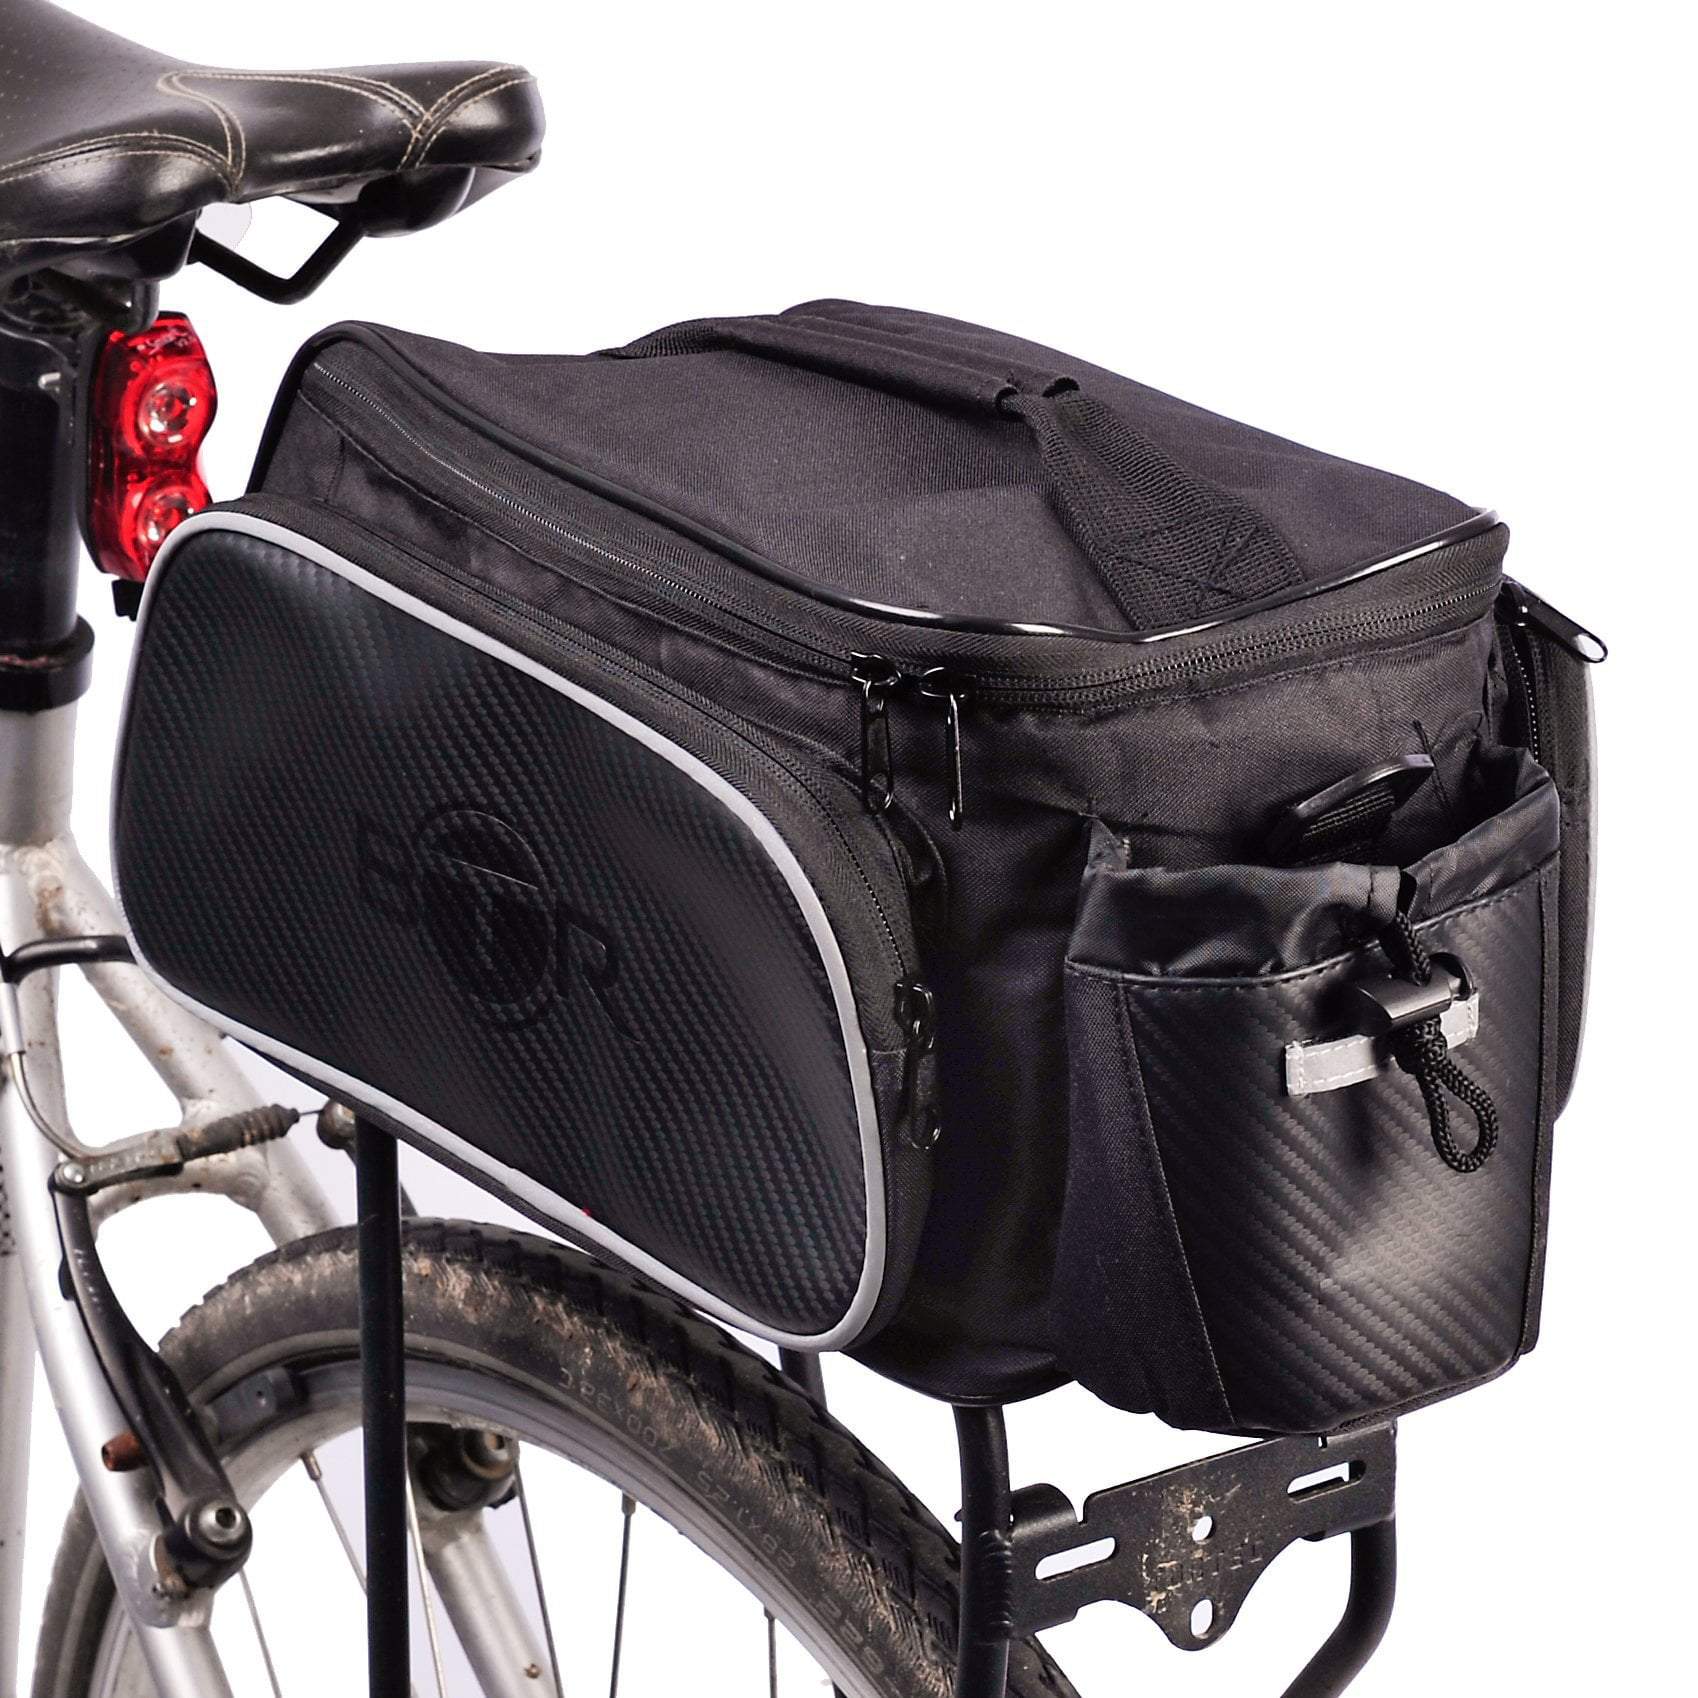 BTR Pannier Bike Bag For Bicycle Rear Racks. Water Resistant. Black ...